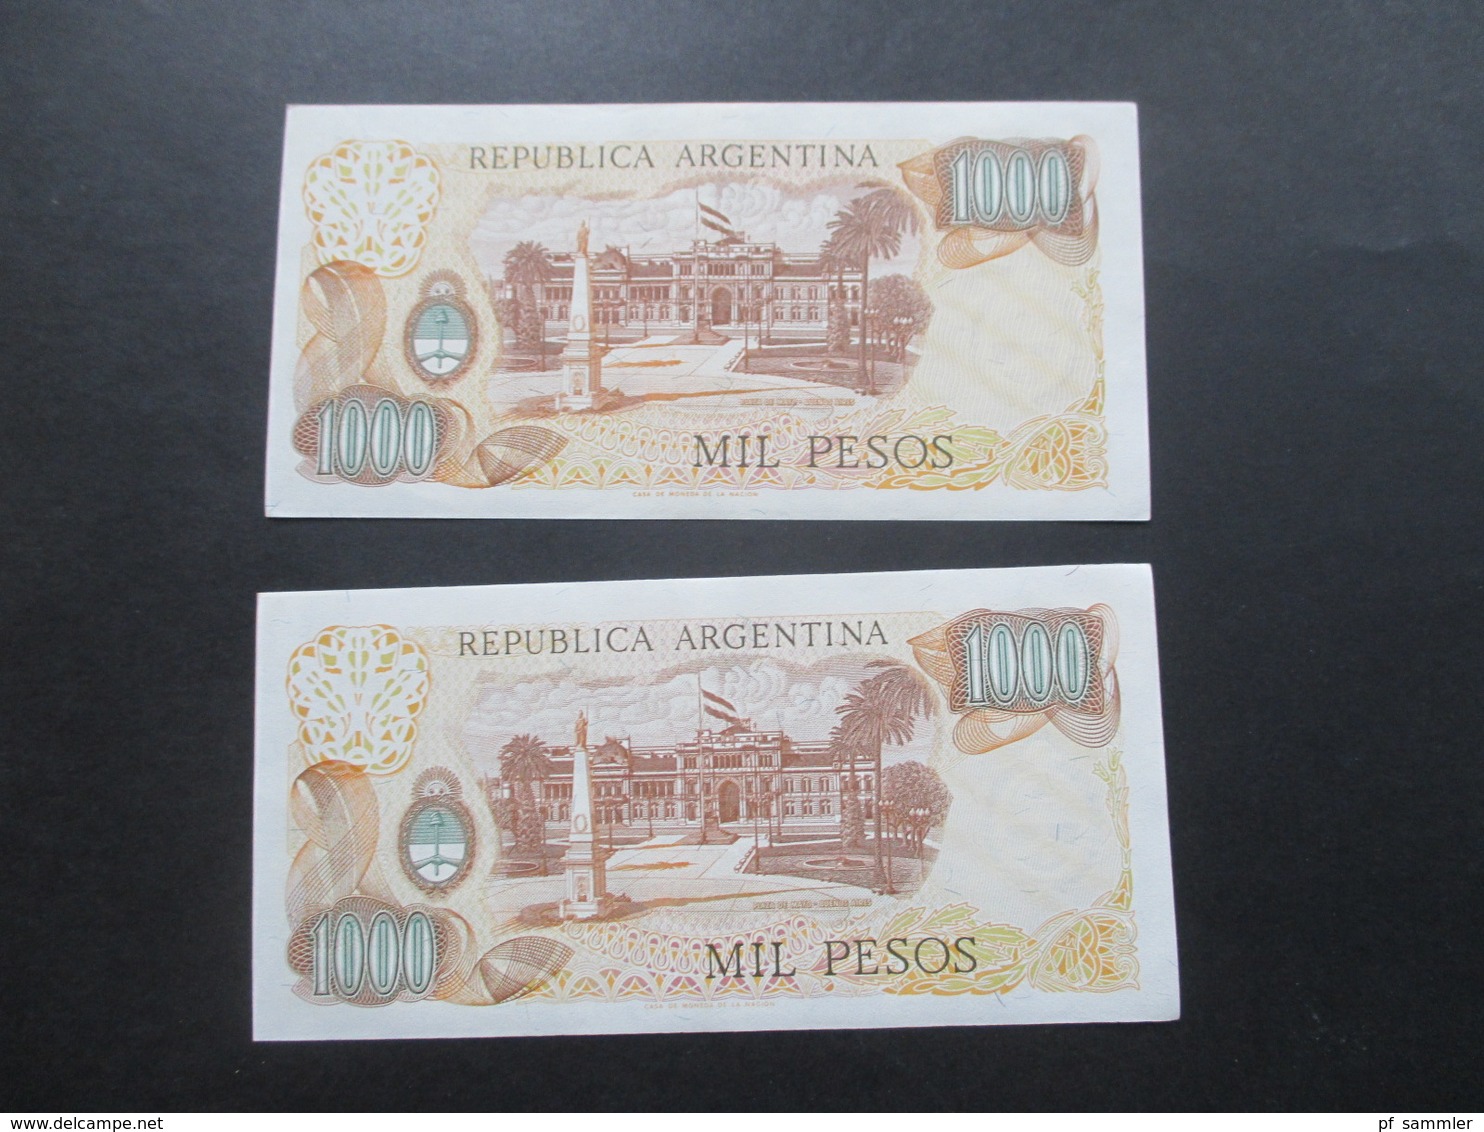 Argentinien 1970er Jahre Geldscheine insgesamt 6850 Pesos 6x Mil Pesos (2x davon sehr guter Zustand) sonst gebraucht!!!!